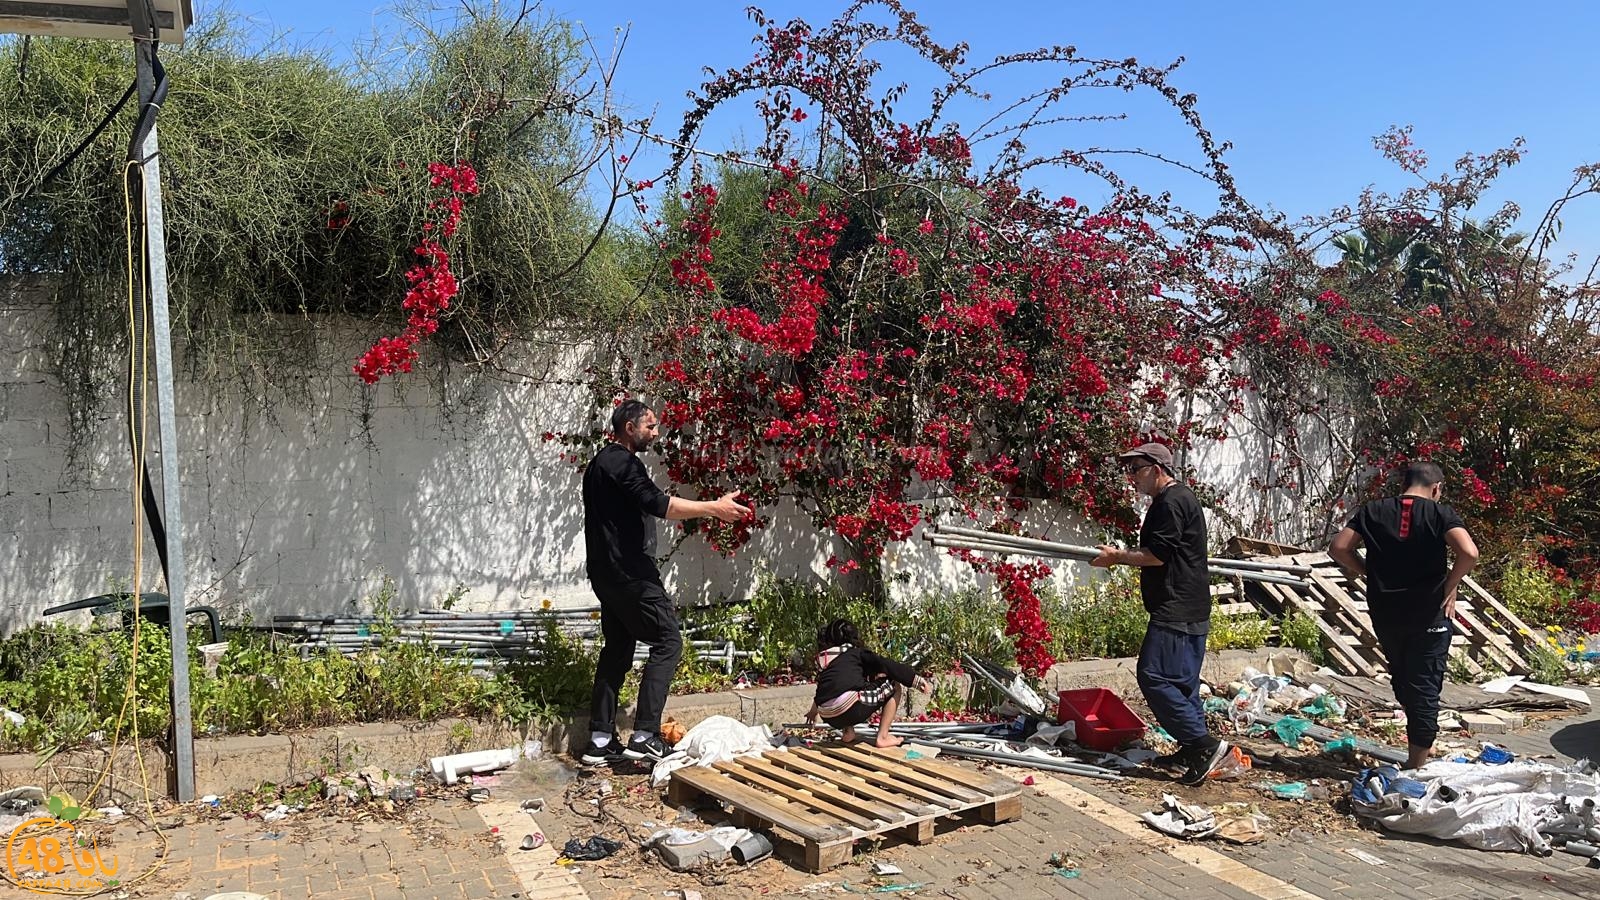 يافا: لجنة اكرام الميت تُنظم حملة لتنظيف مقبرة طاسو 